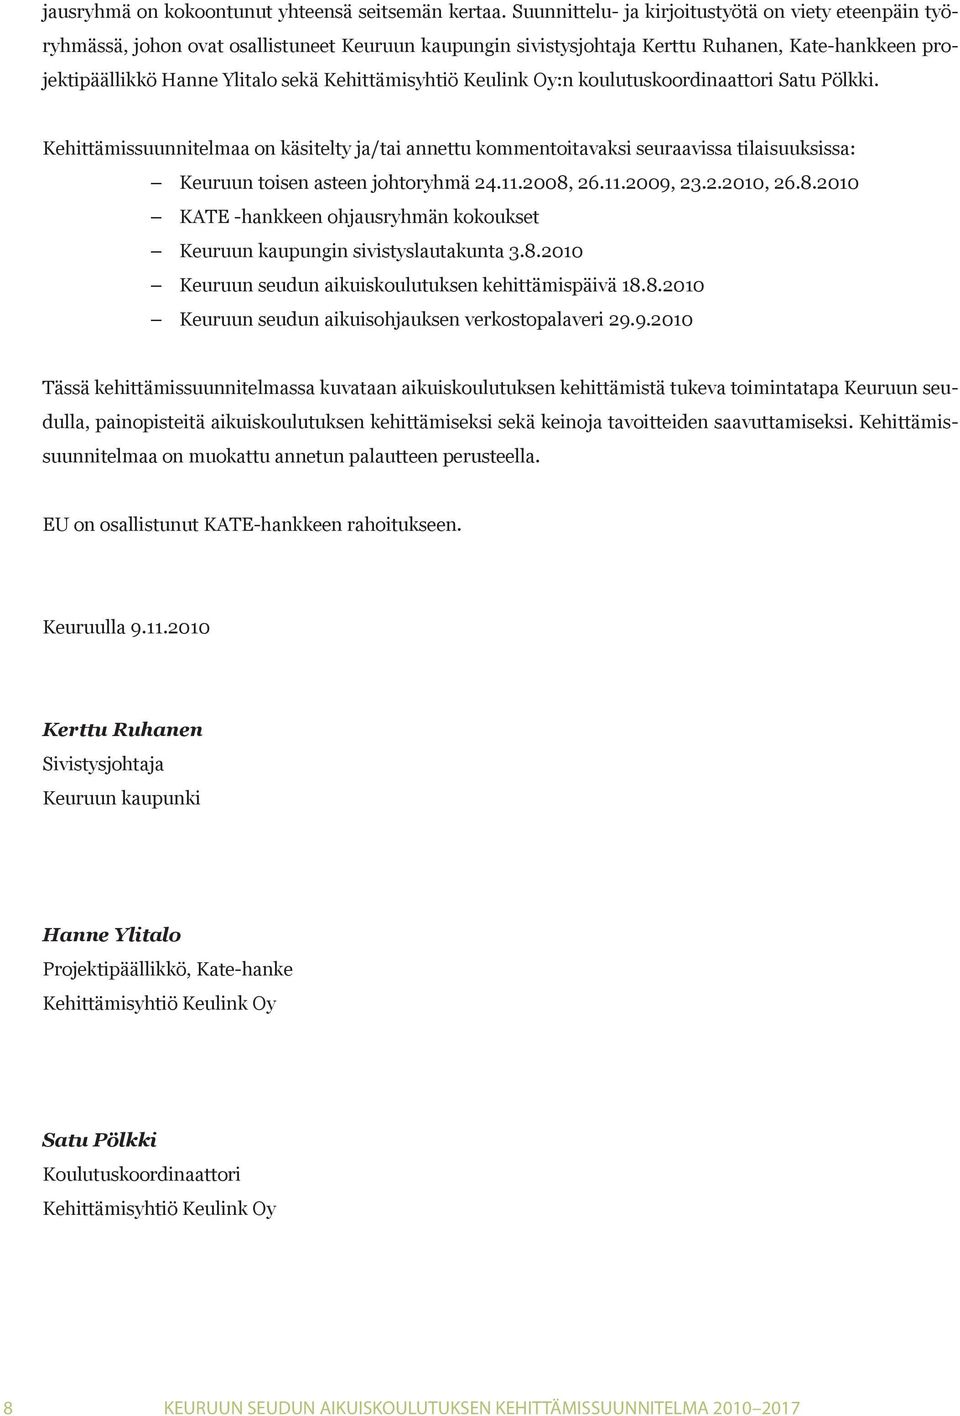 Kehittämisyhtiö Keulink Oy:n koulutuskoordinaattori Satu Pölkki. Kehittämissuunnitelmaa on käsitelty ja/tai annettu kommentoitavaksi seuraavissa tilaisuuksissa: Keuruun toisen asteen johtoryhmä 24.11.